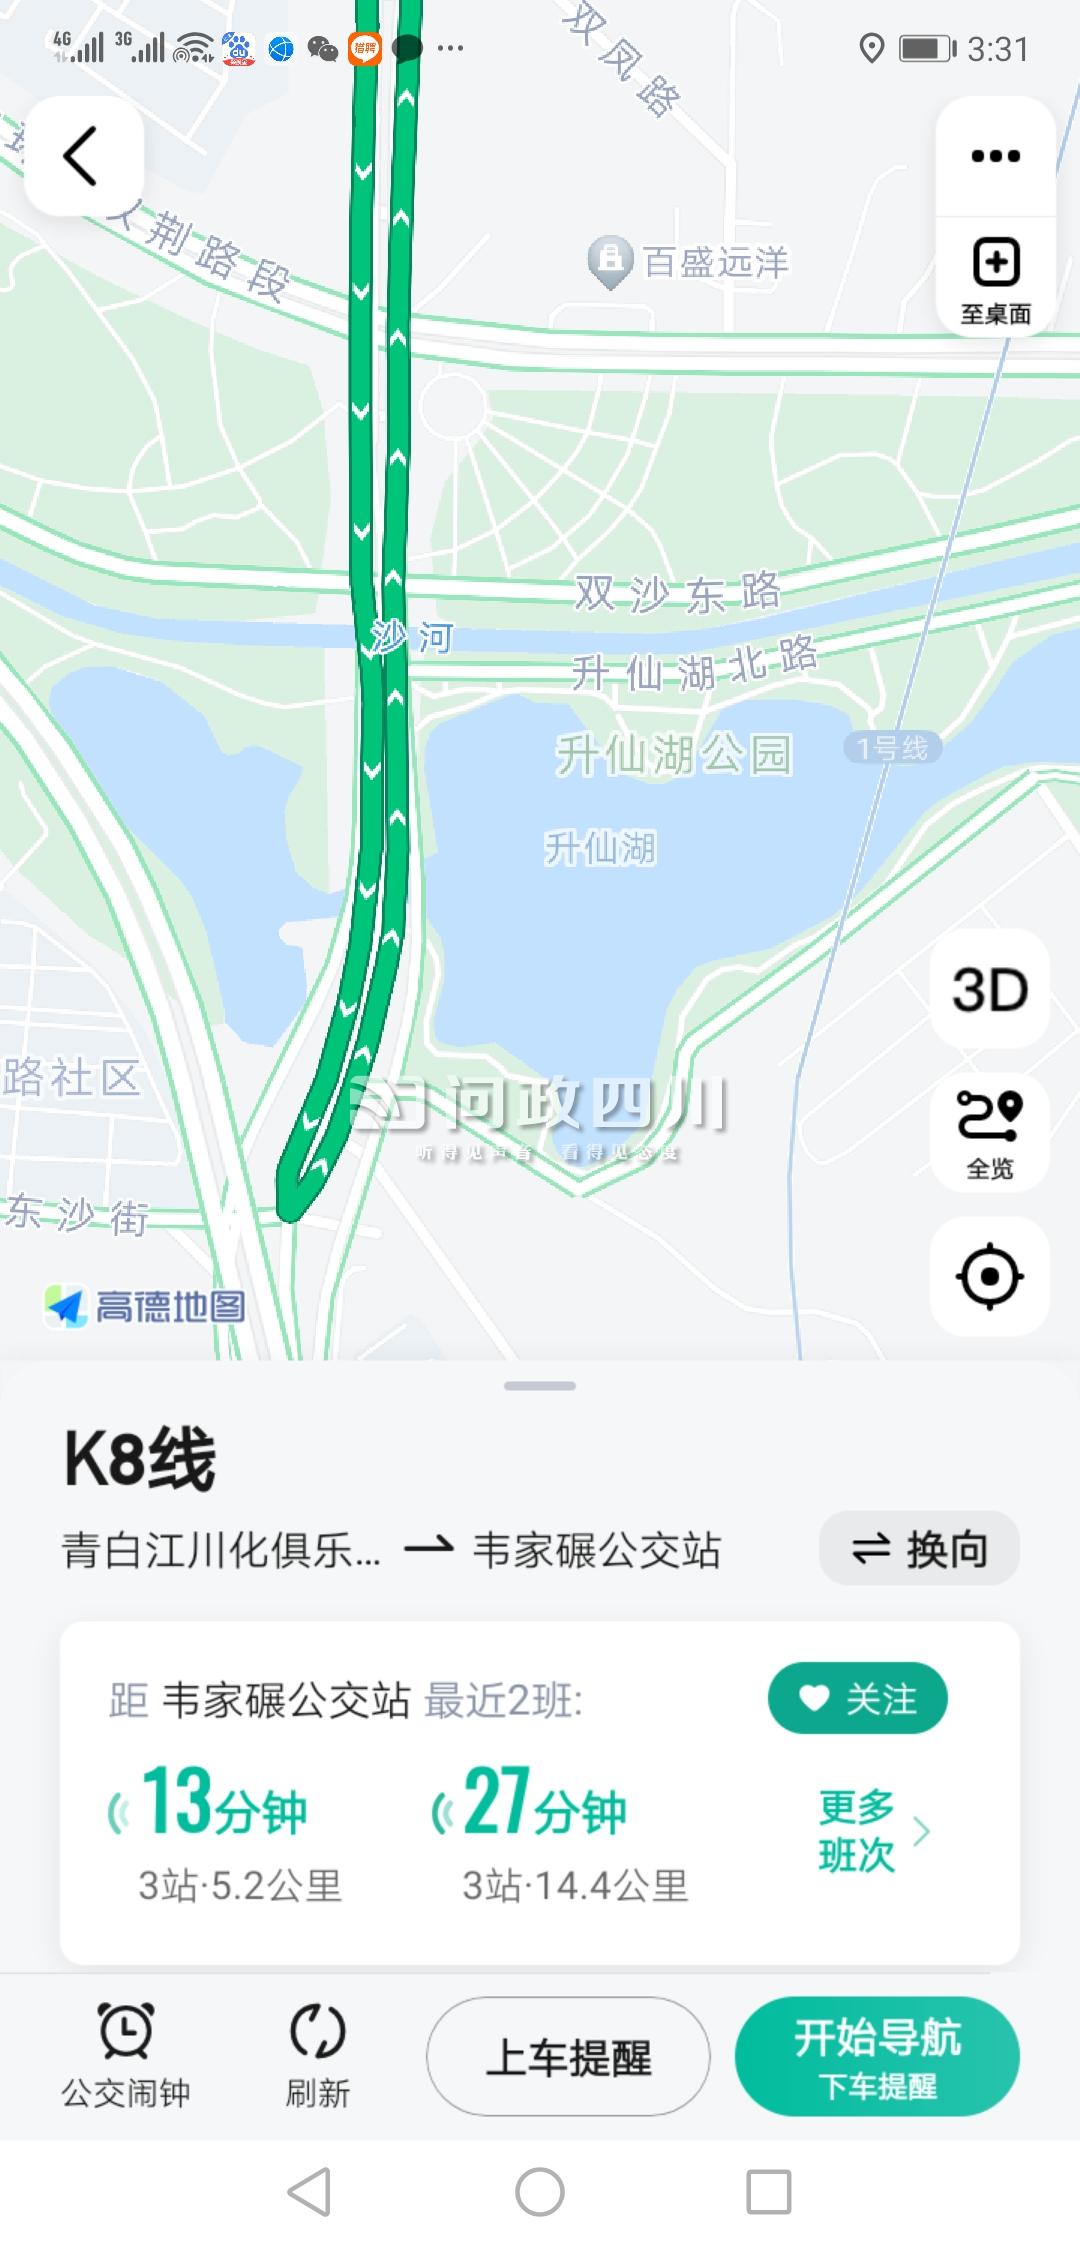 海口k8路公交车路线图图片